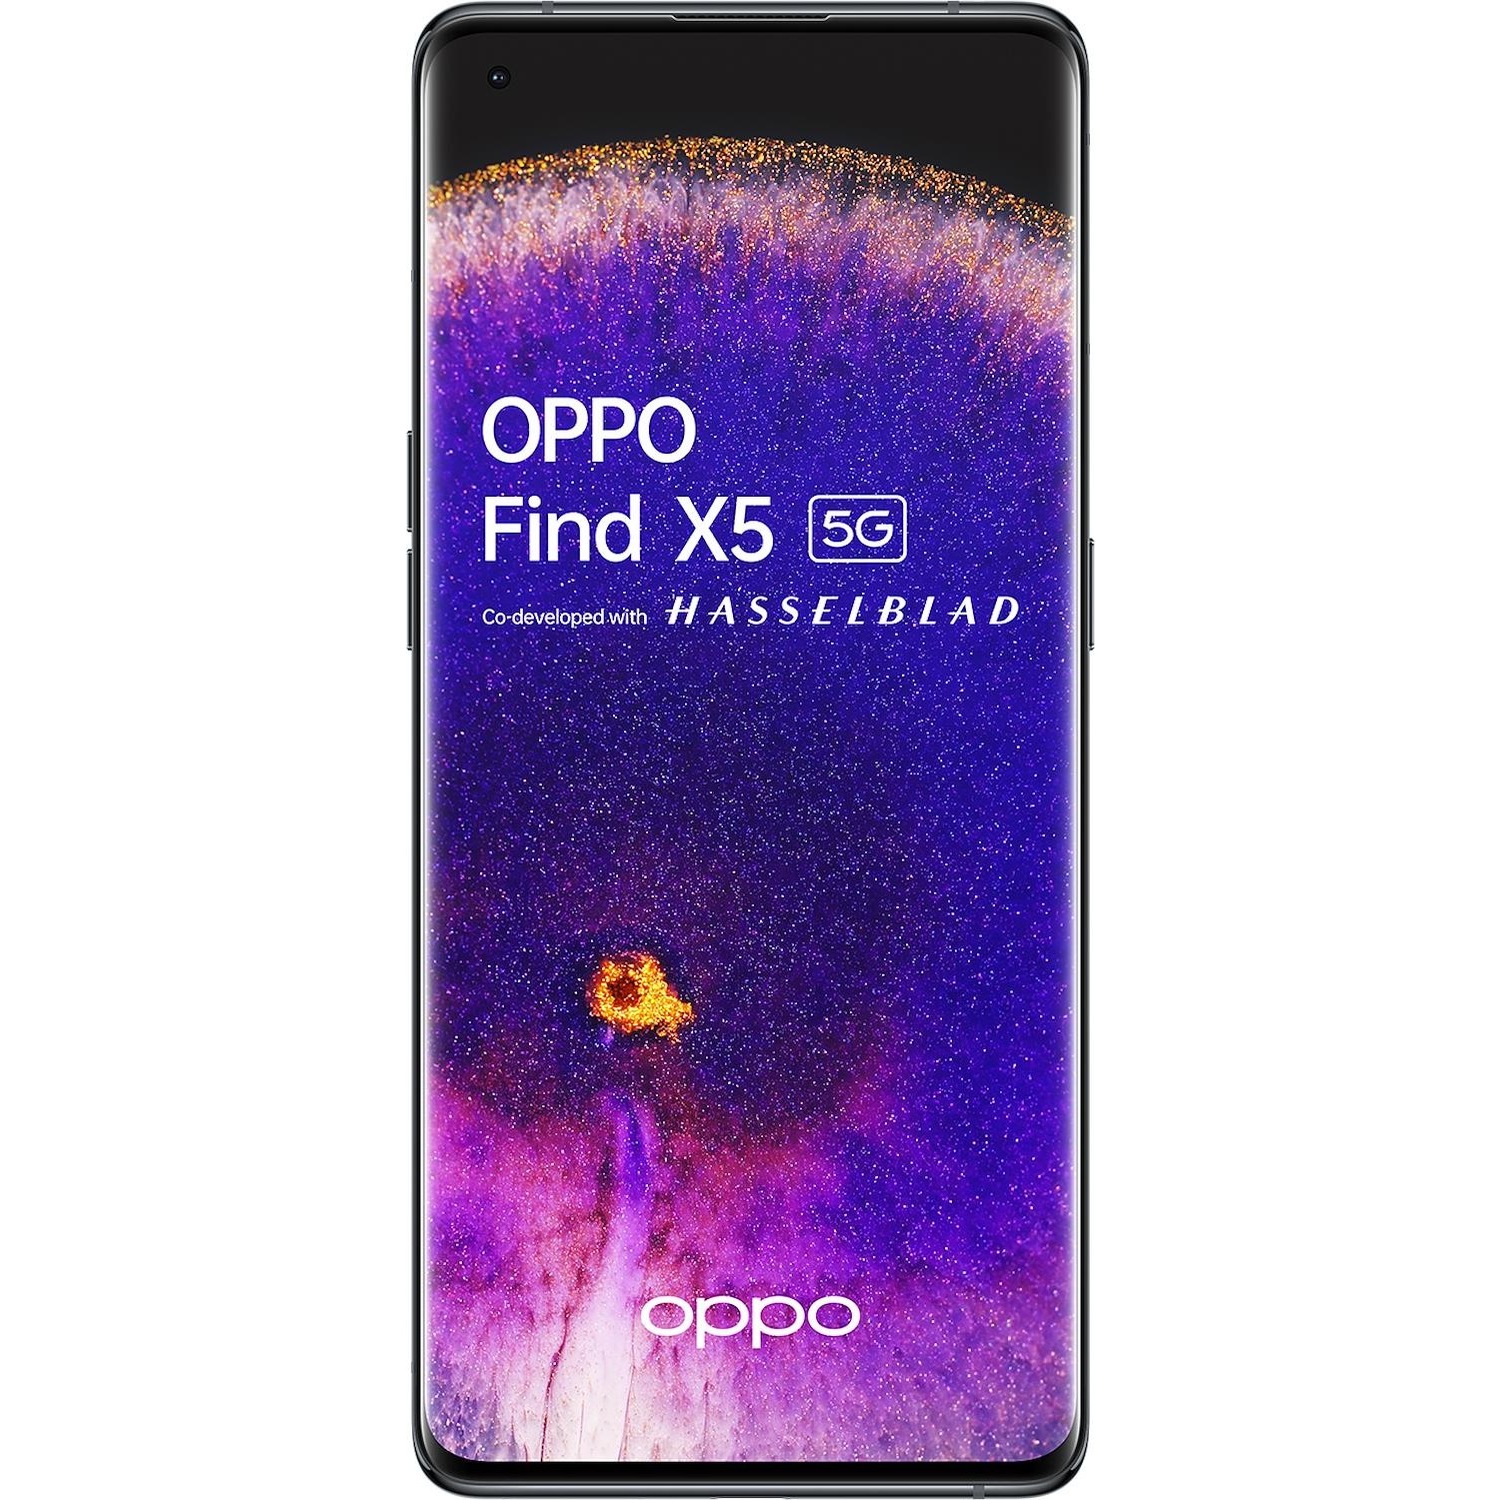 Immagine per Smartphone Wind3 Oppo Find X5 black nero da DIMOStore